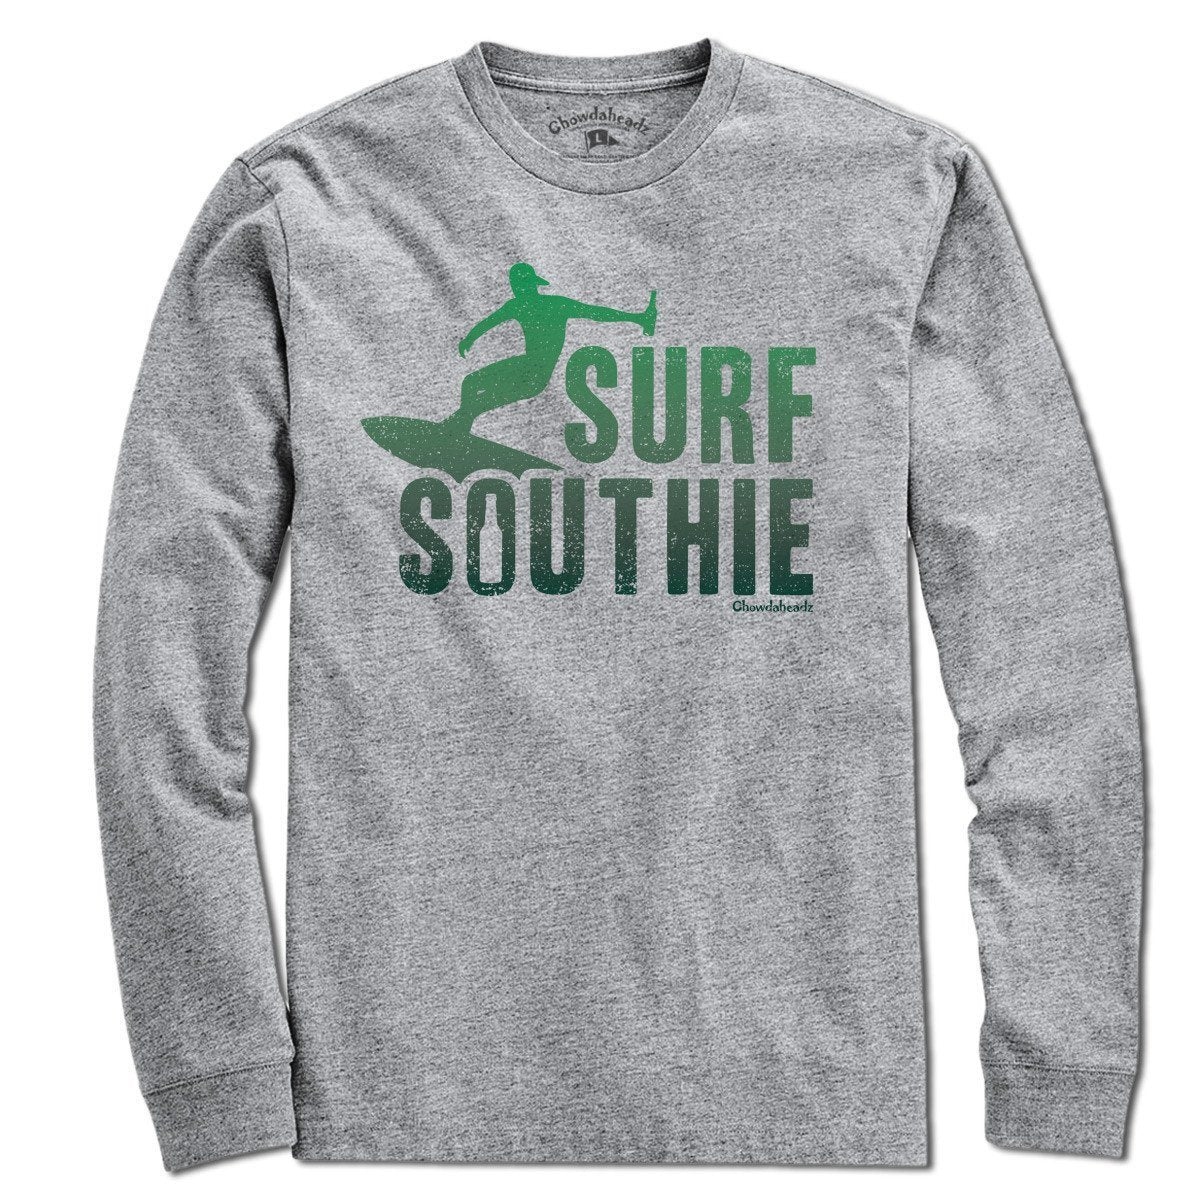 Surf Southie T-Shirt